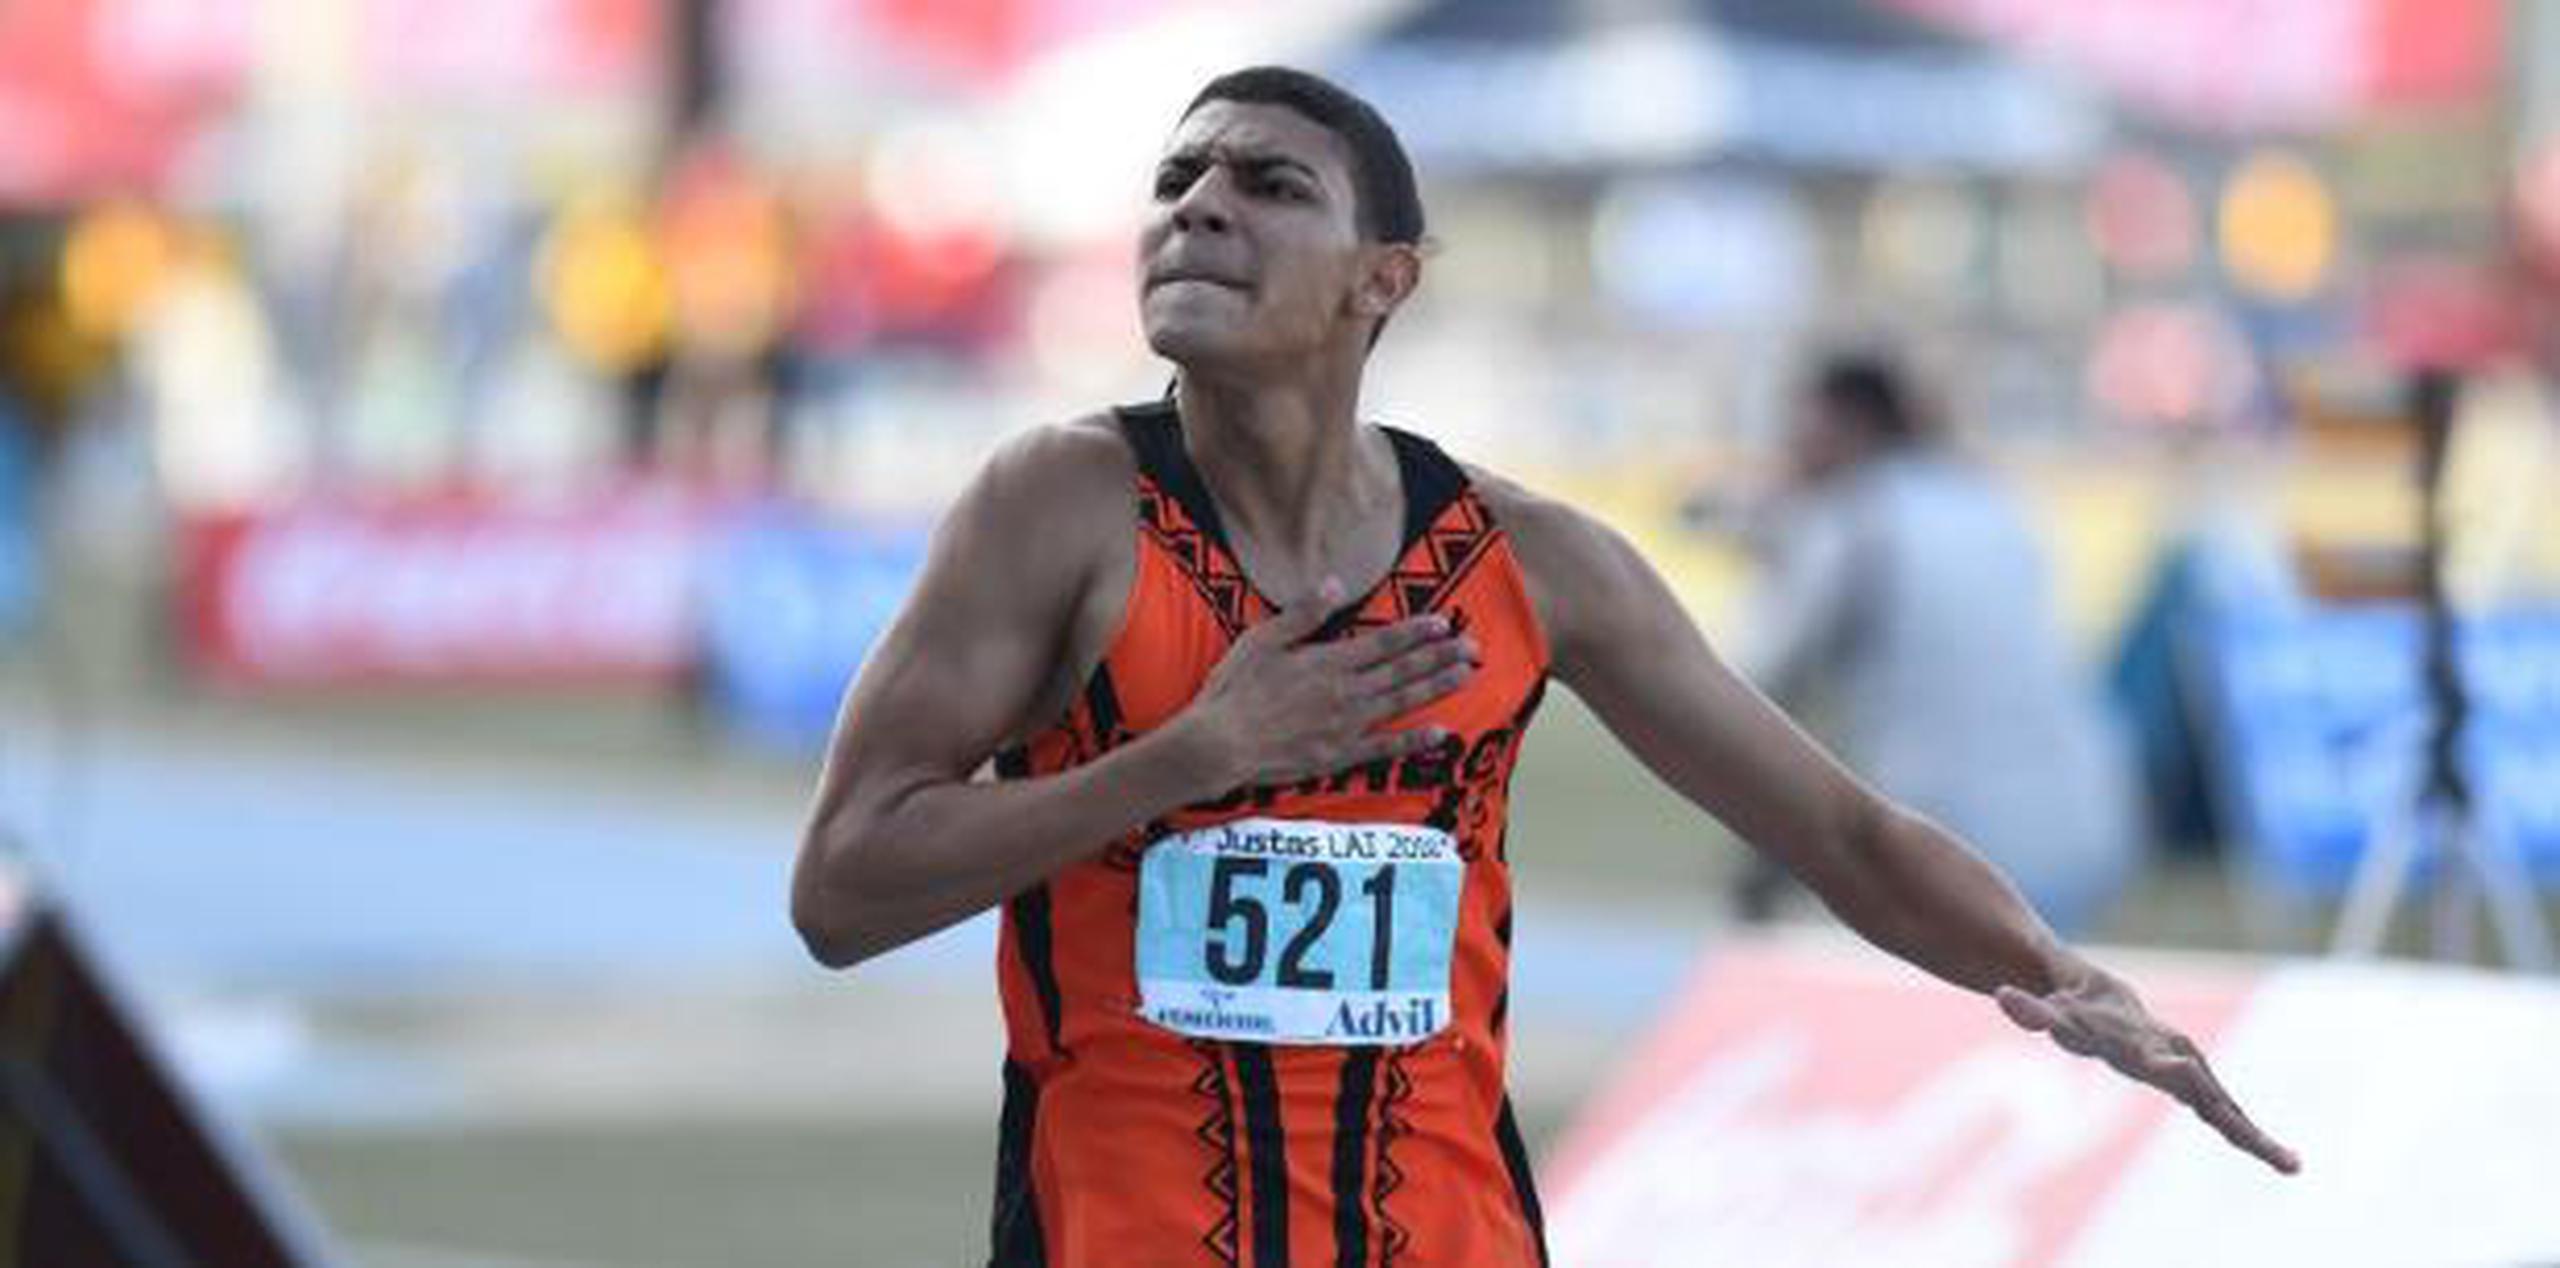 Ryan Sánchez es al día de hoy el corredor de 800 metros de Puerto Rico que mejor tiempo ha realizado entre los tres clasificados para Barranquilla. (Archivo)